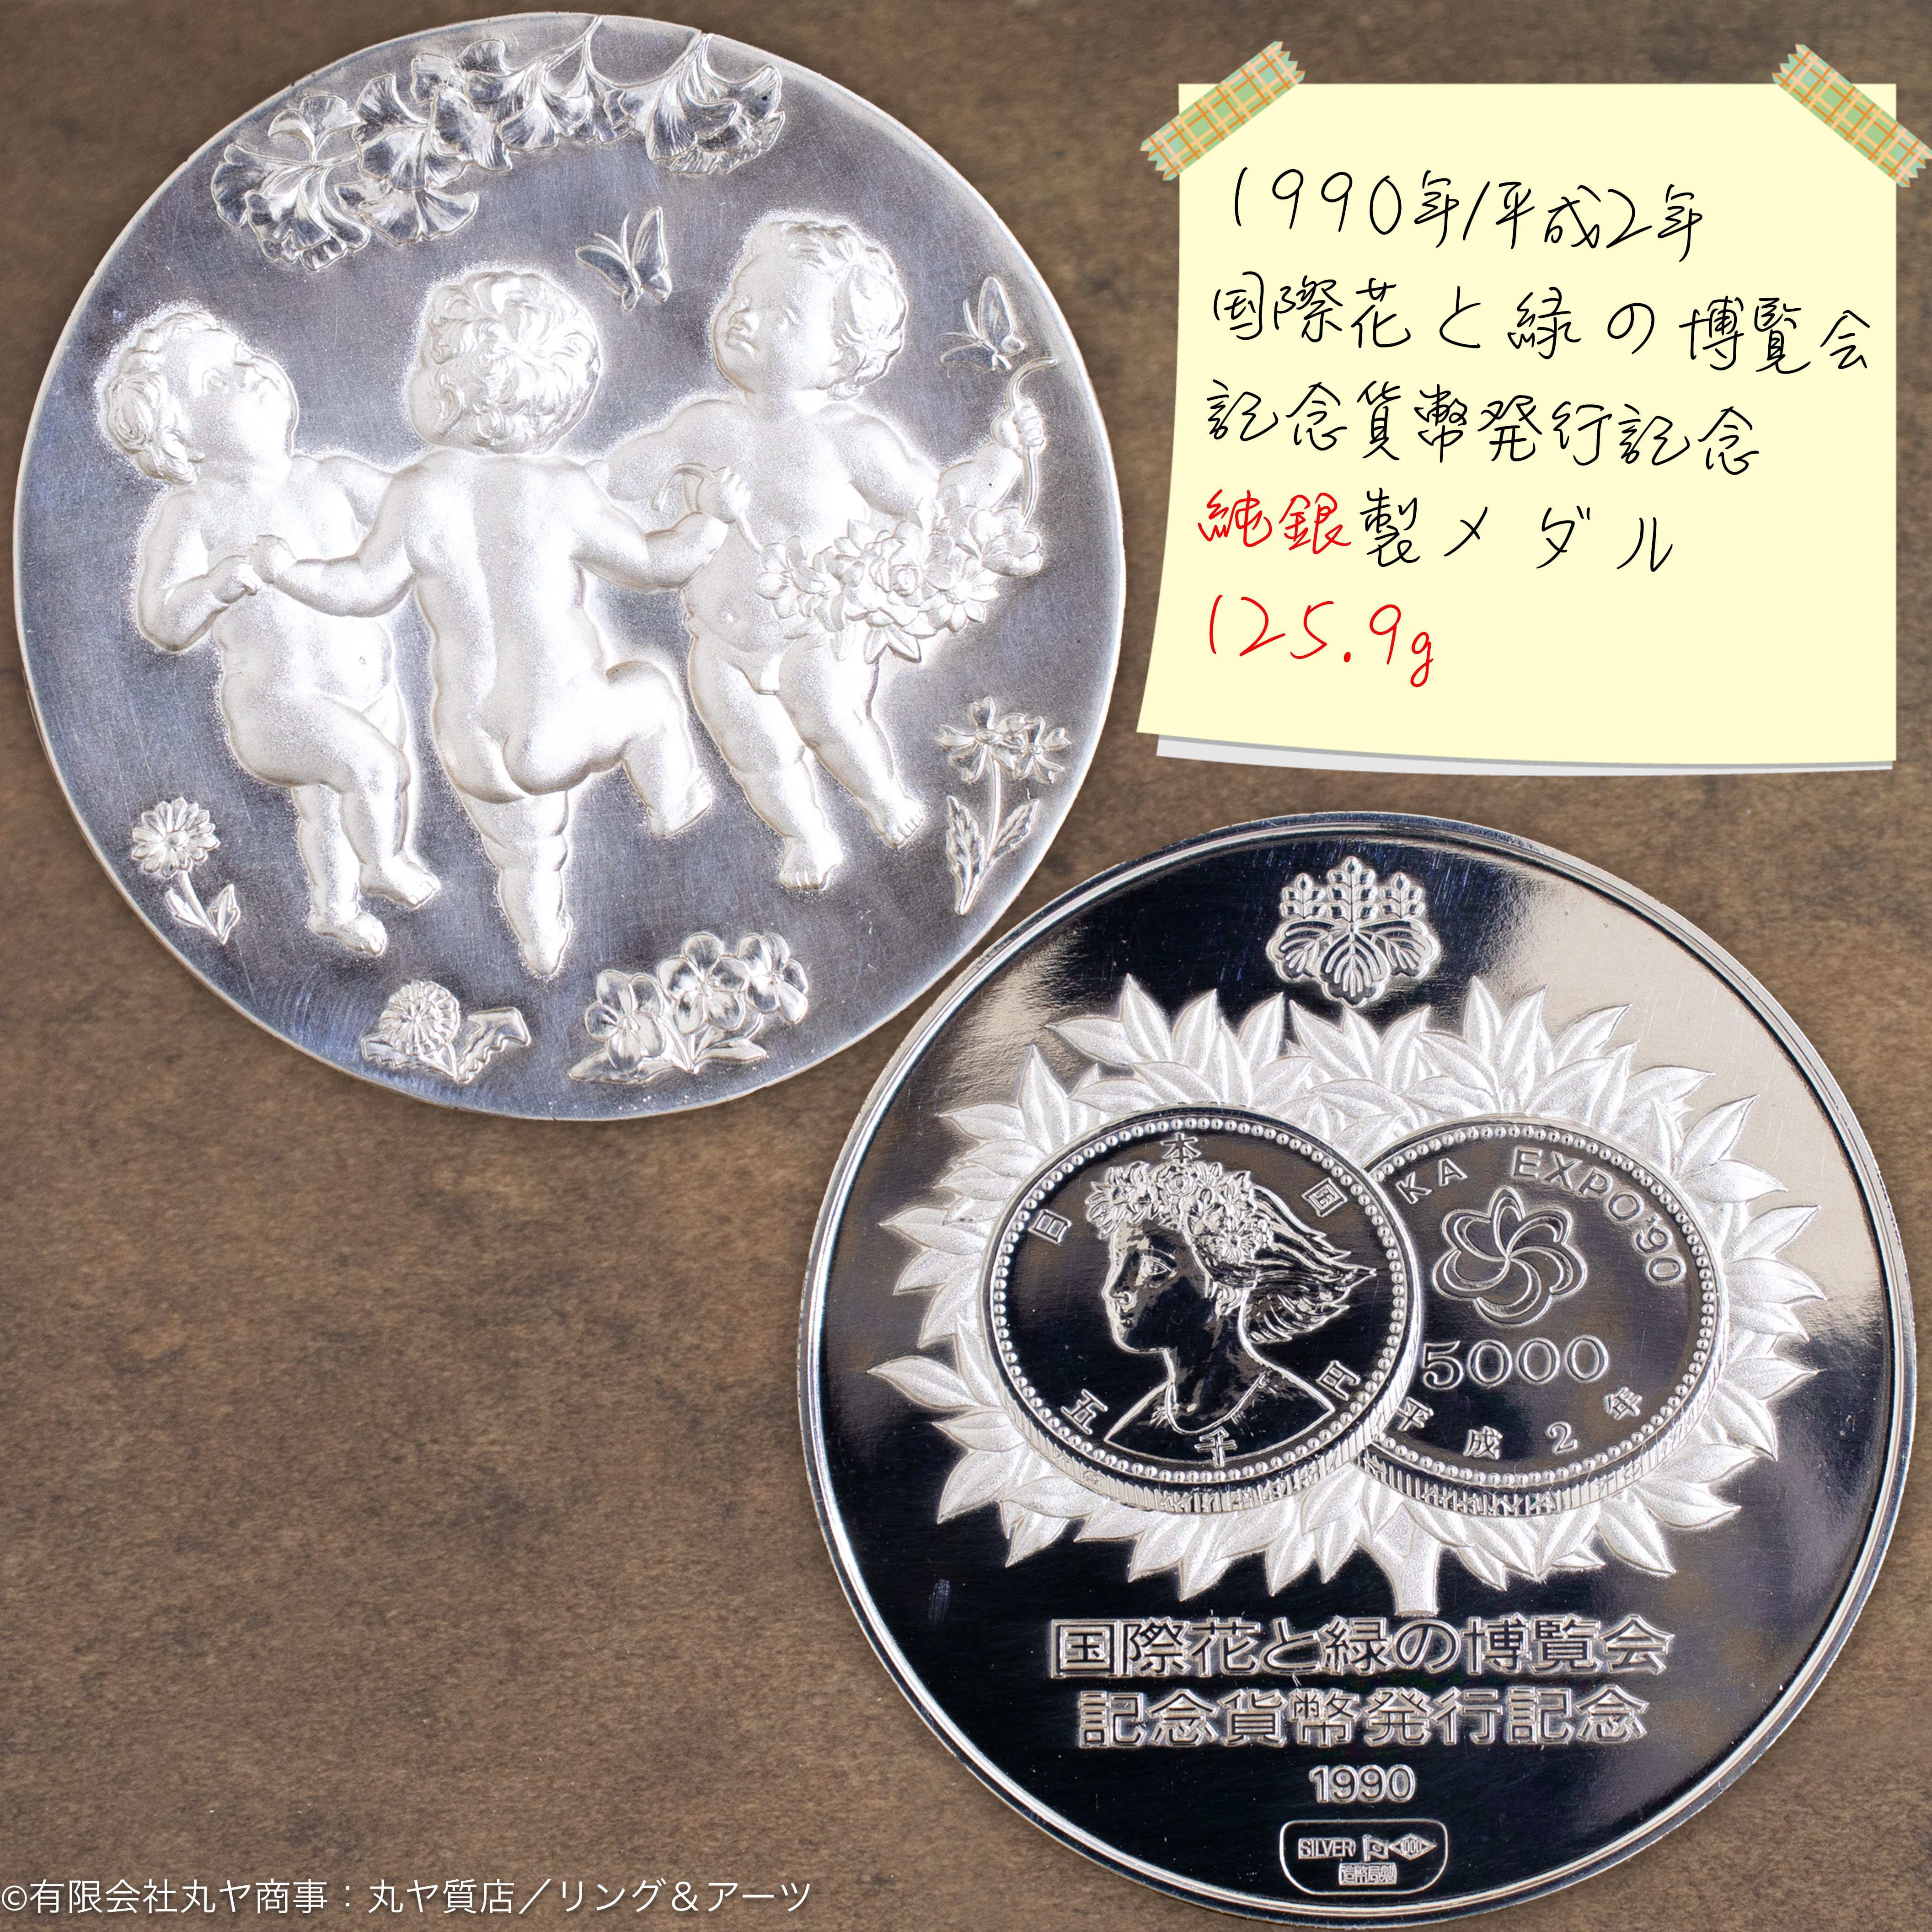 【レア】国際花と緑の博覧会 記念貨幣発行記念メダル